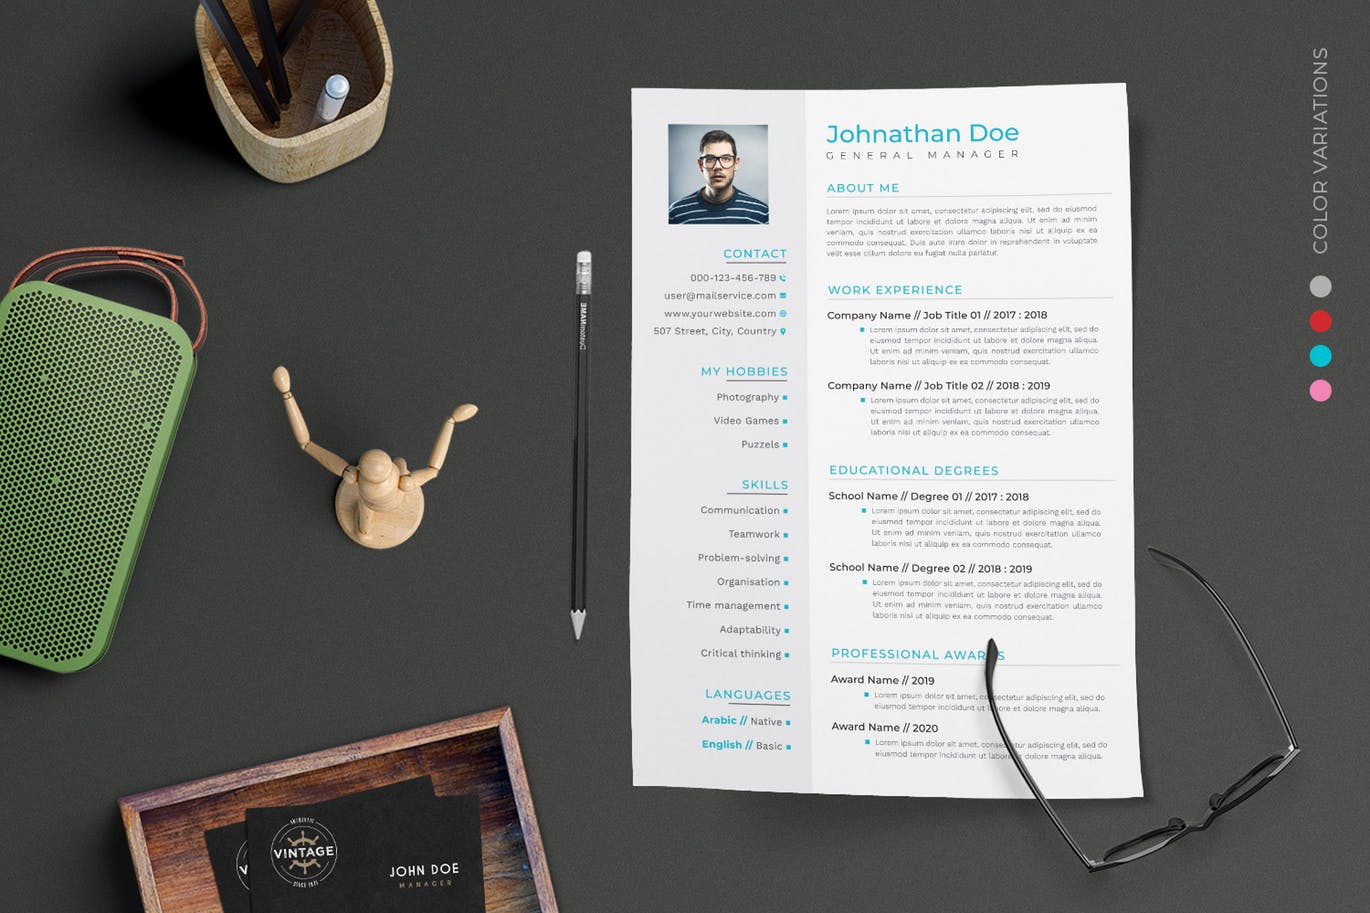 项目管理经理个人电子素材库精选简历模板 CV Resume插图